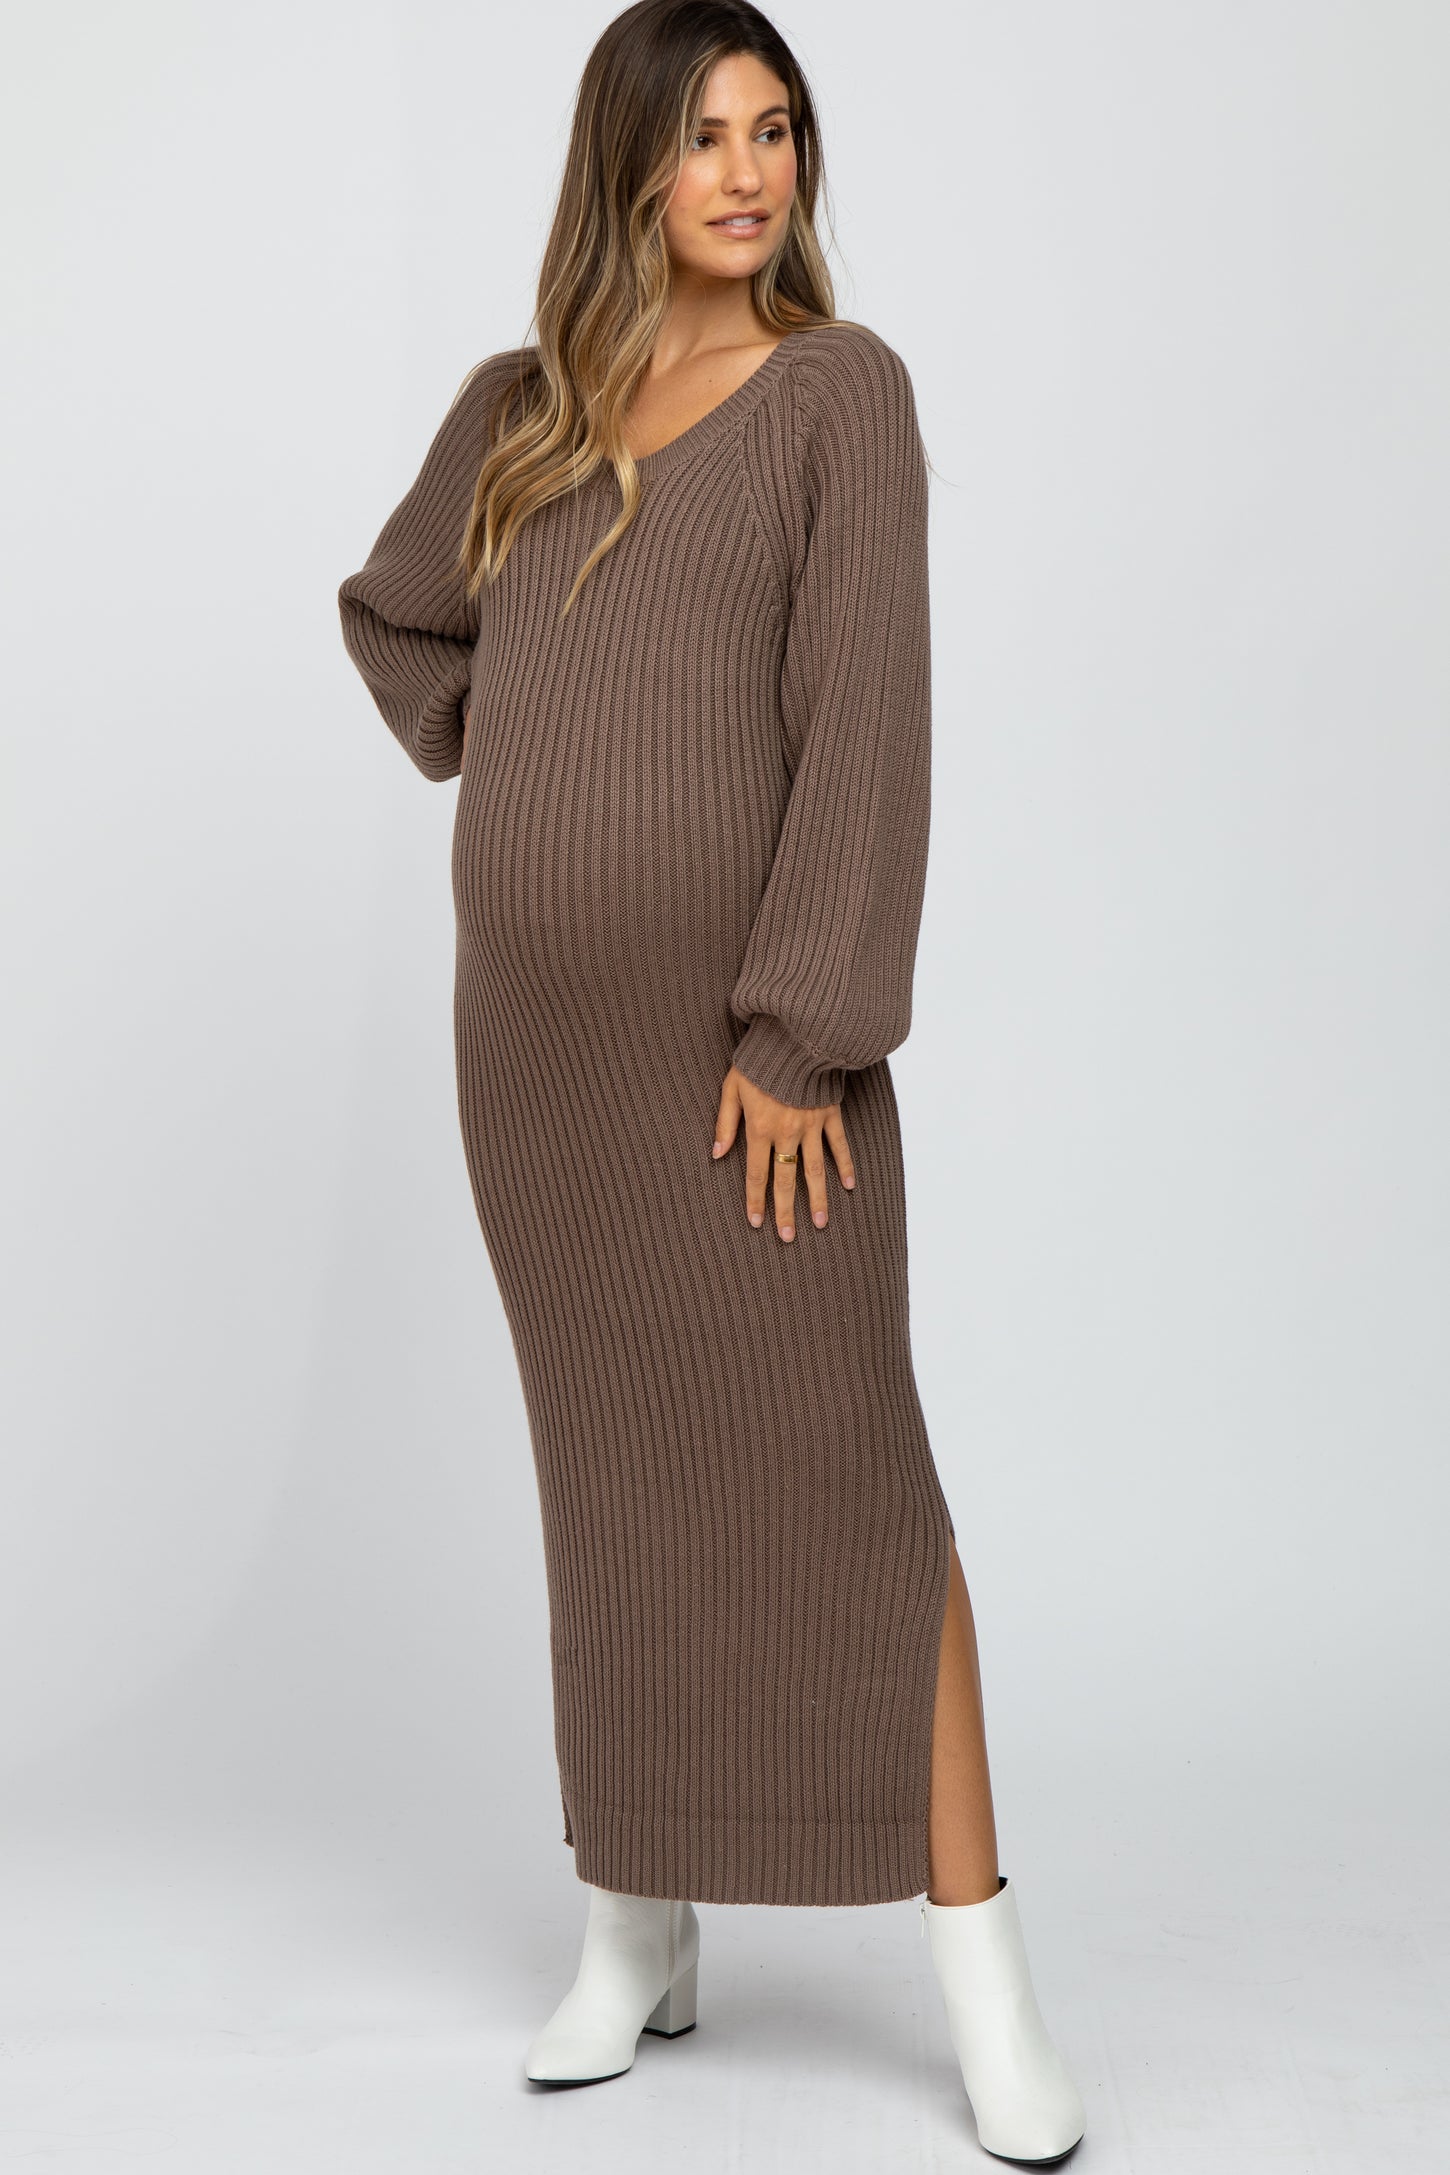 Taupe Side Slit Maternity Maxi Sweater Dress– PinkBlush